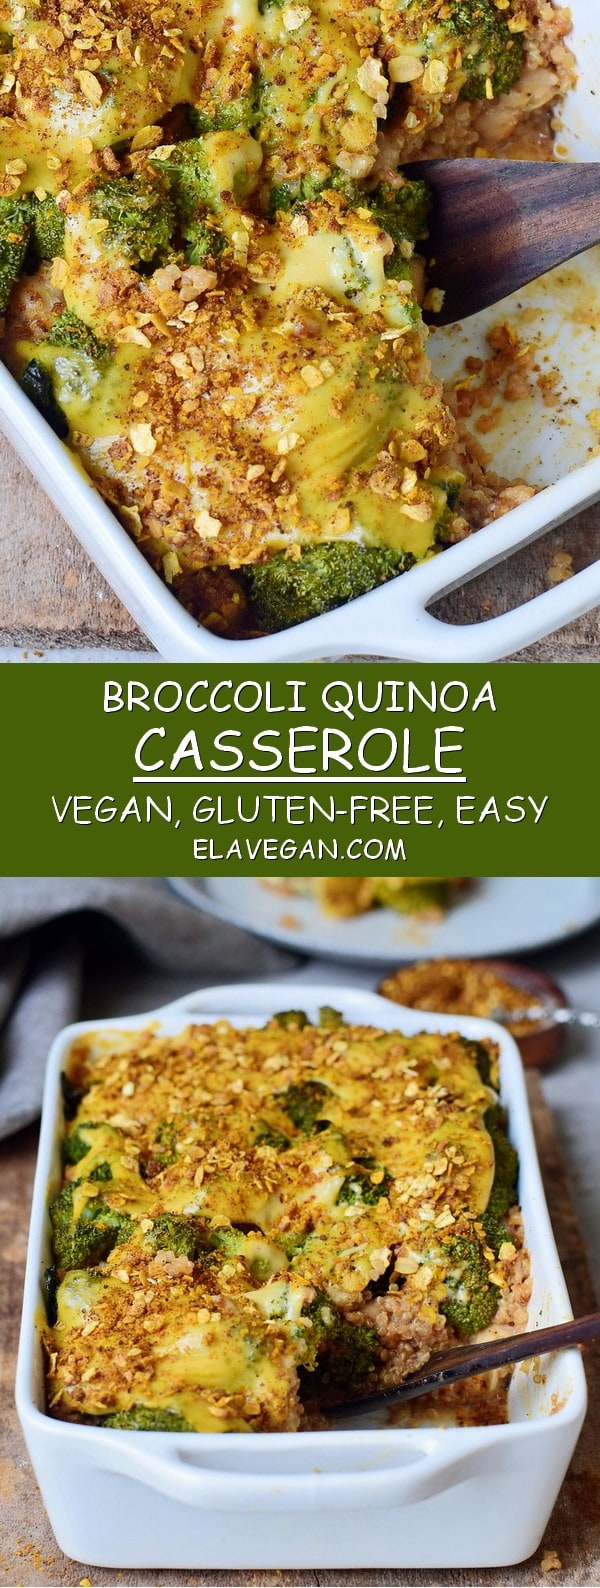 easy gluten-free broccoli quinoa casserole recipe with vegan cheese